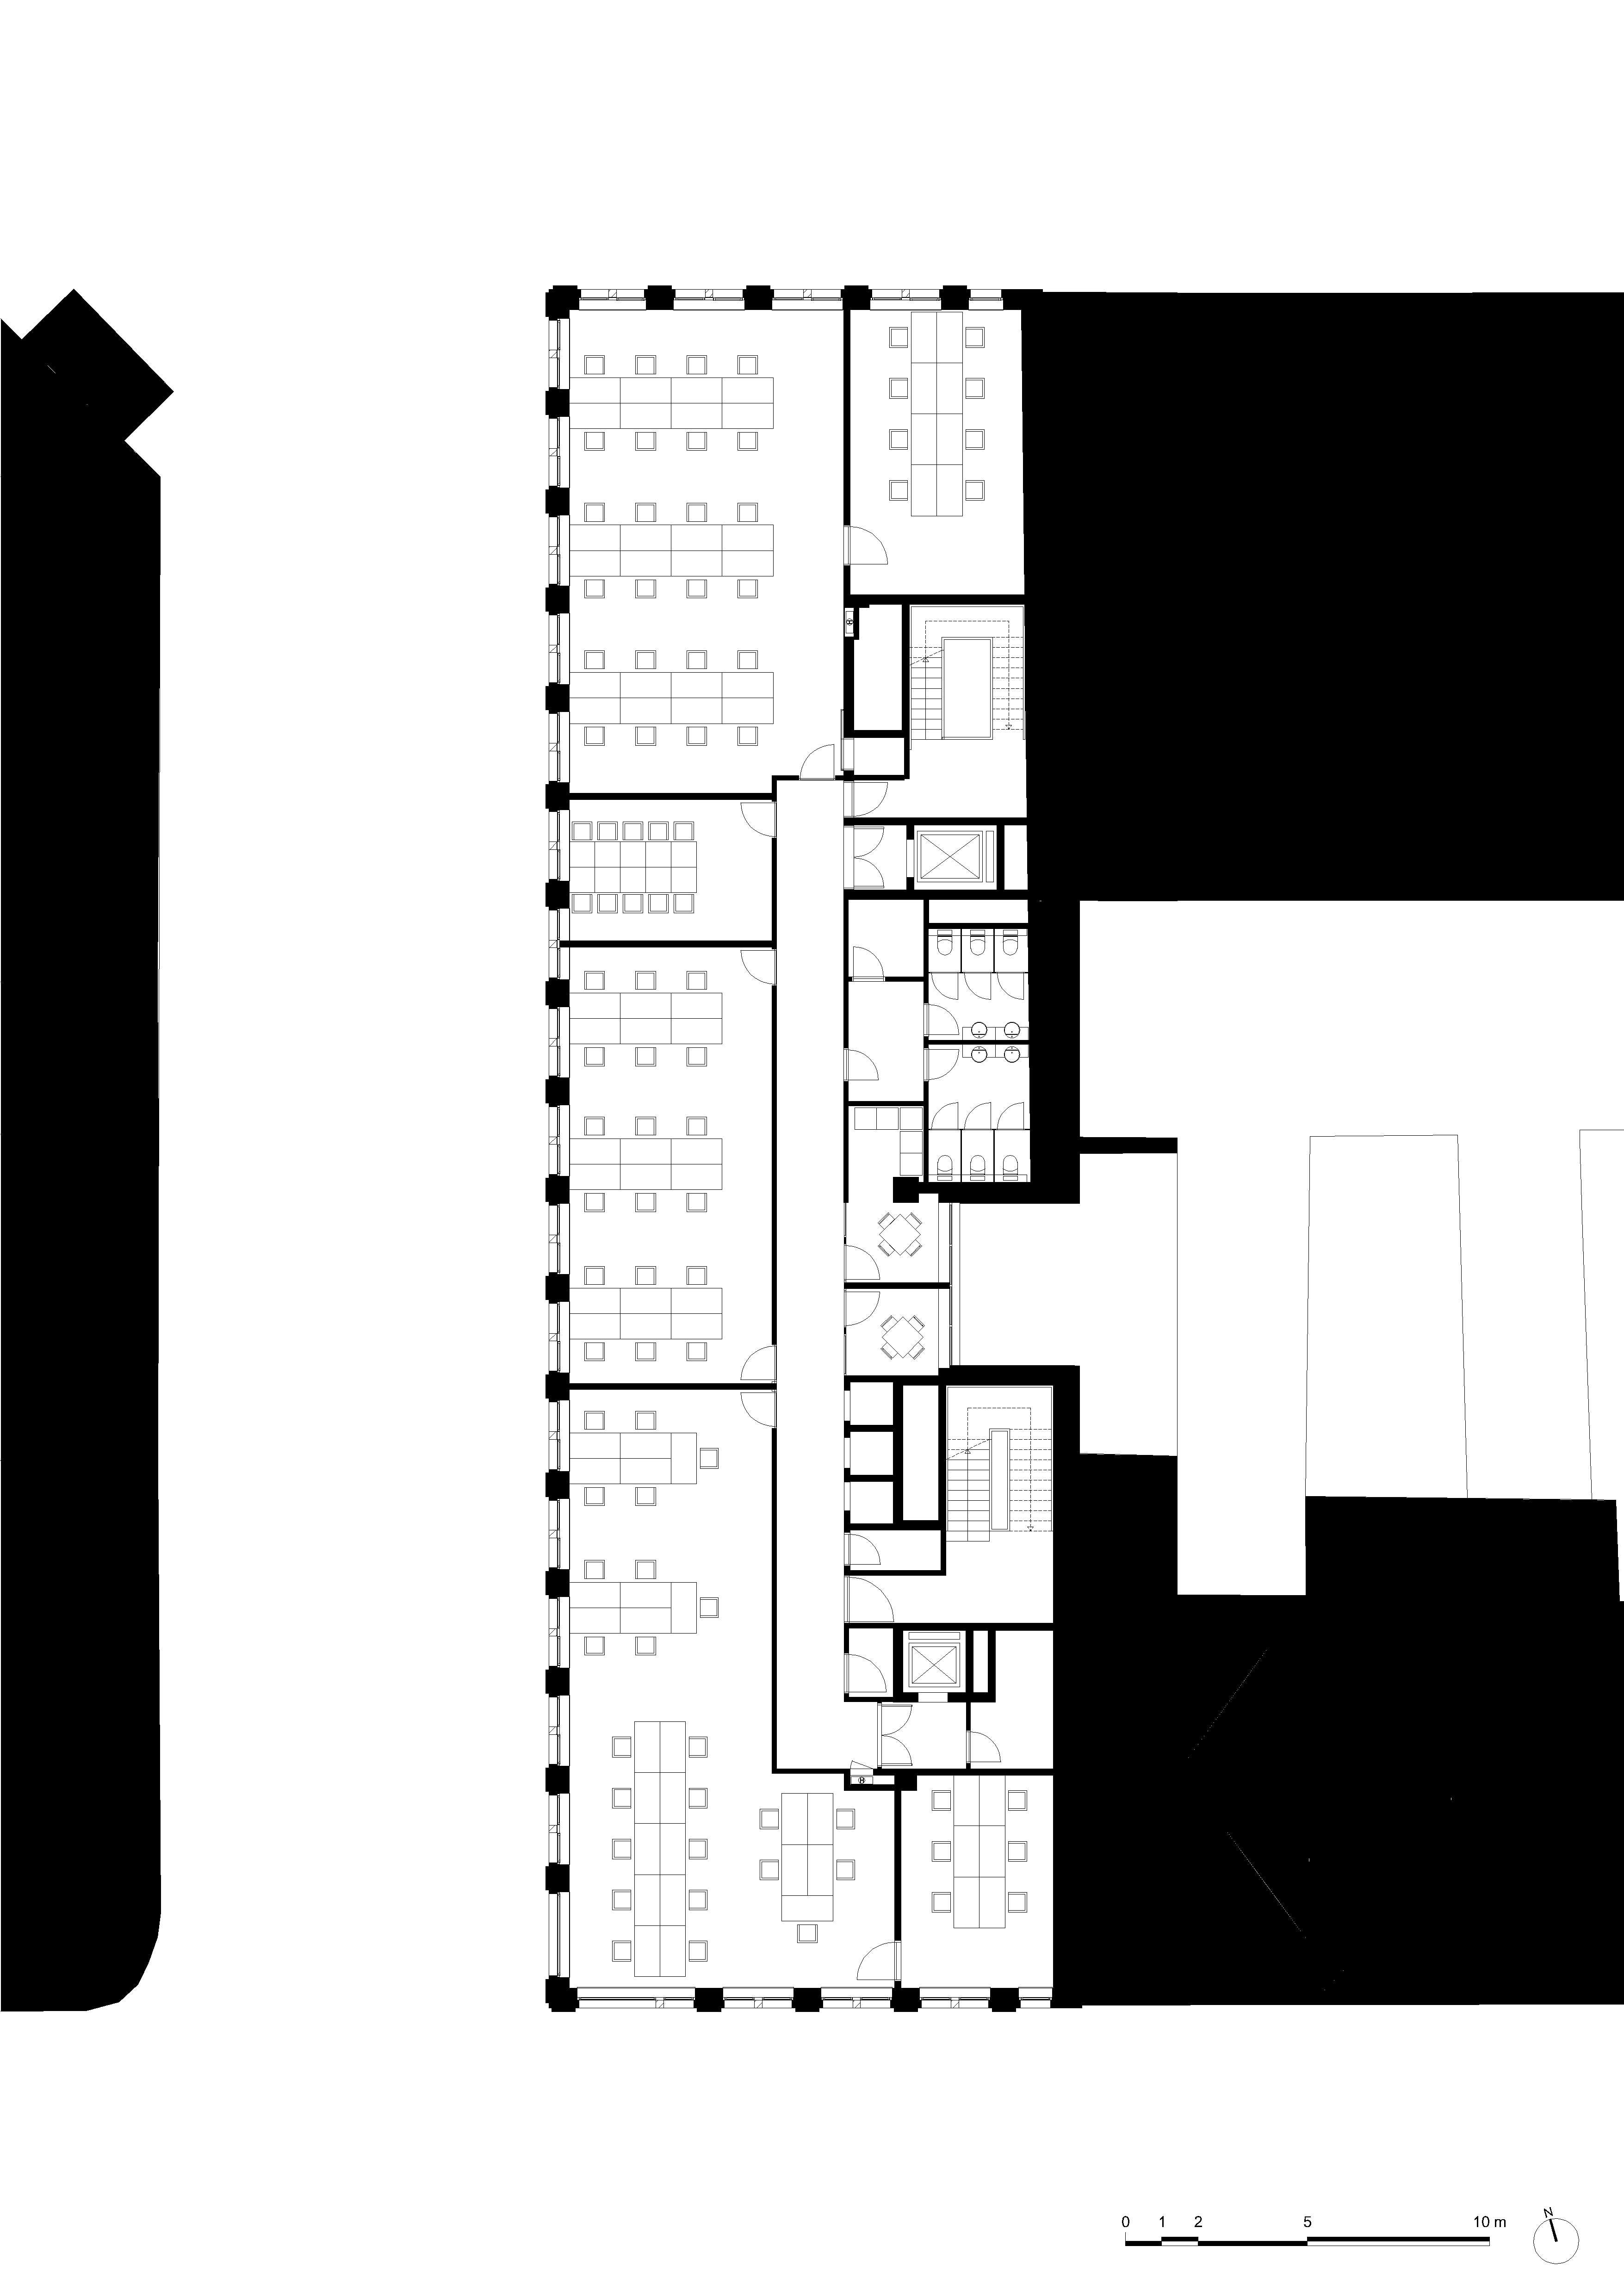 architecture-contemporaine-dockin-sambrinvest-bureau-innovation-charleroi-brique-émaillée-plan-deuxième-étage